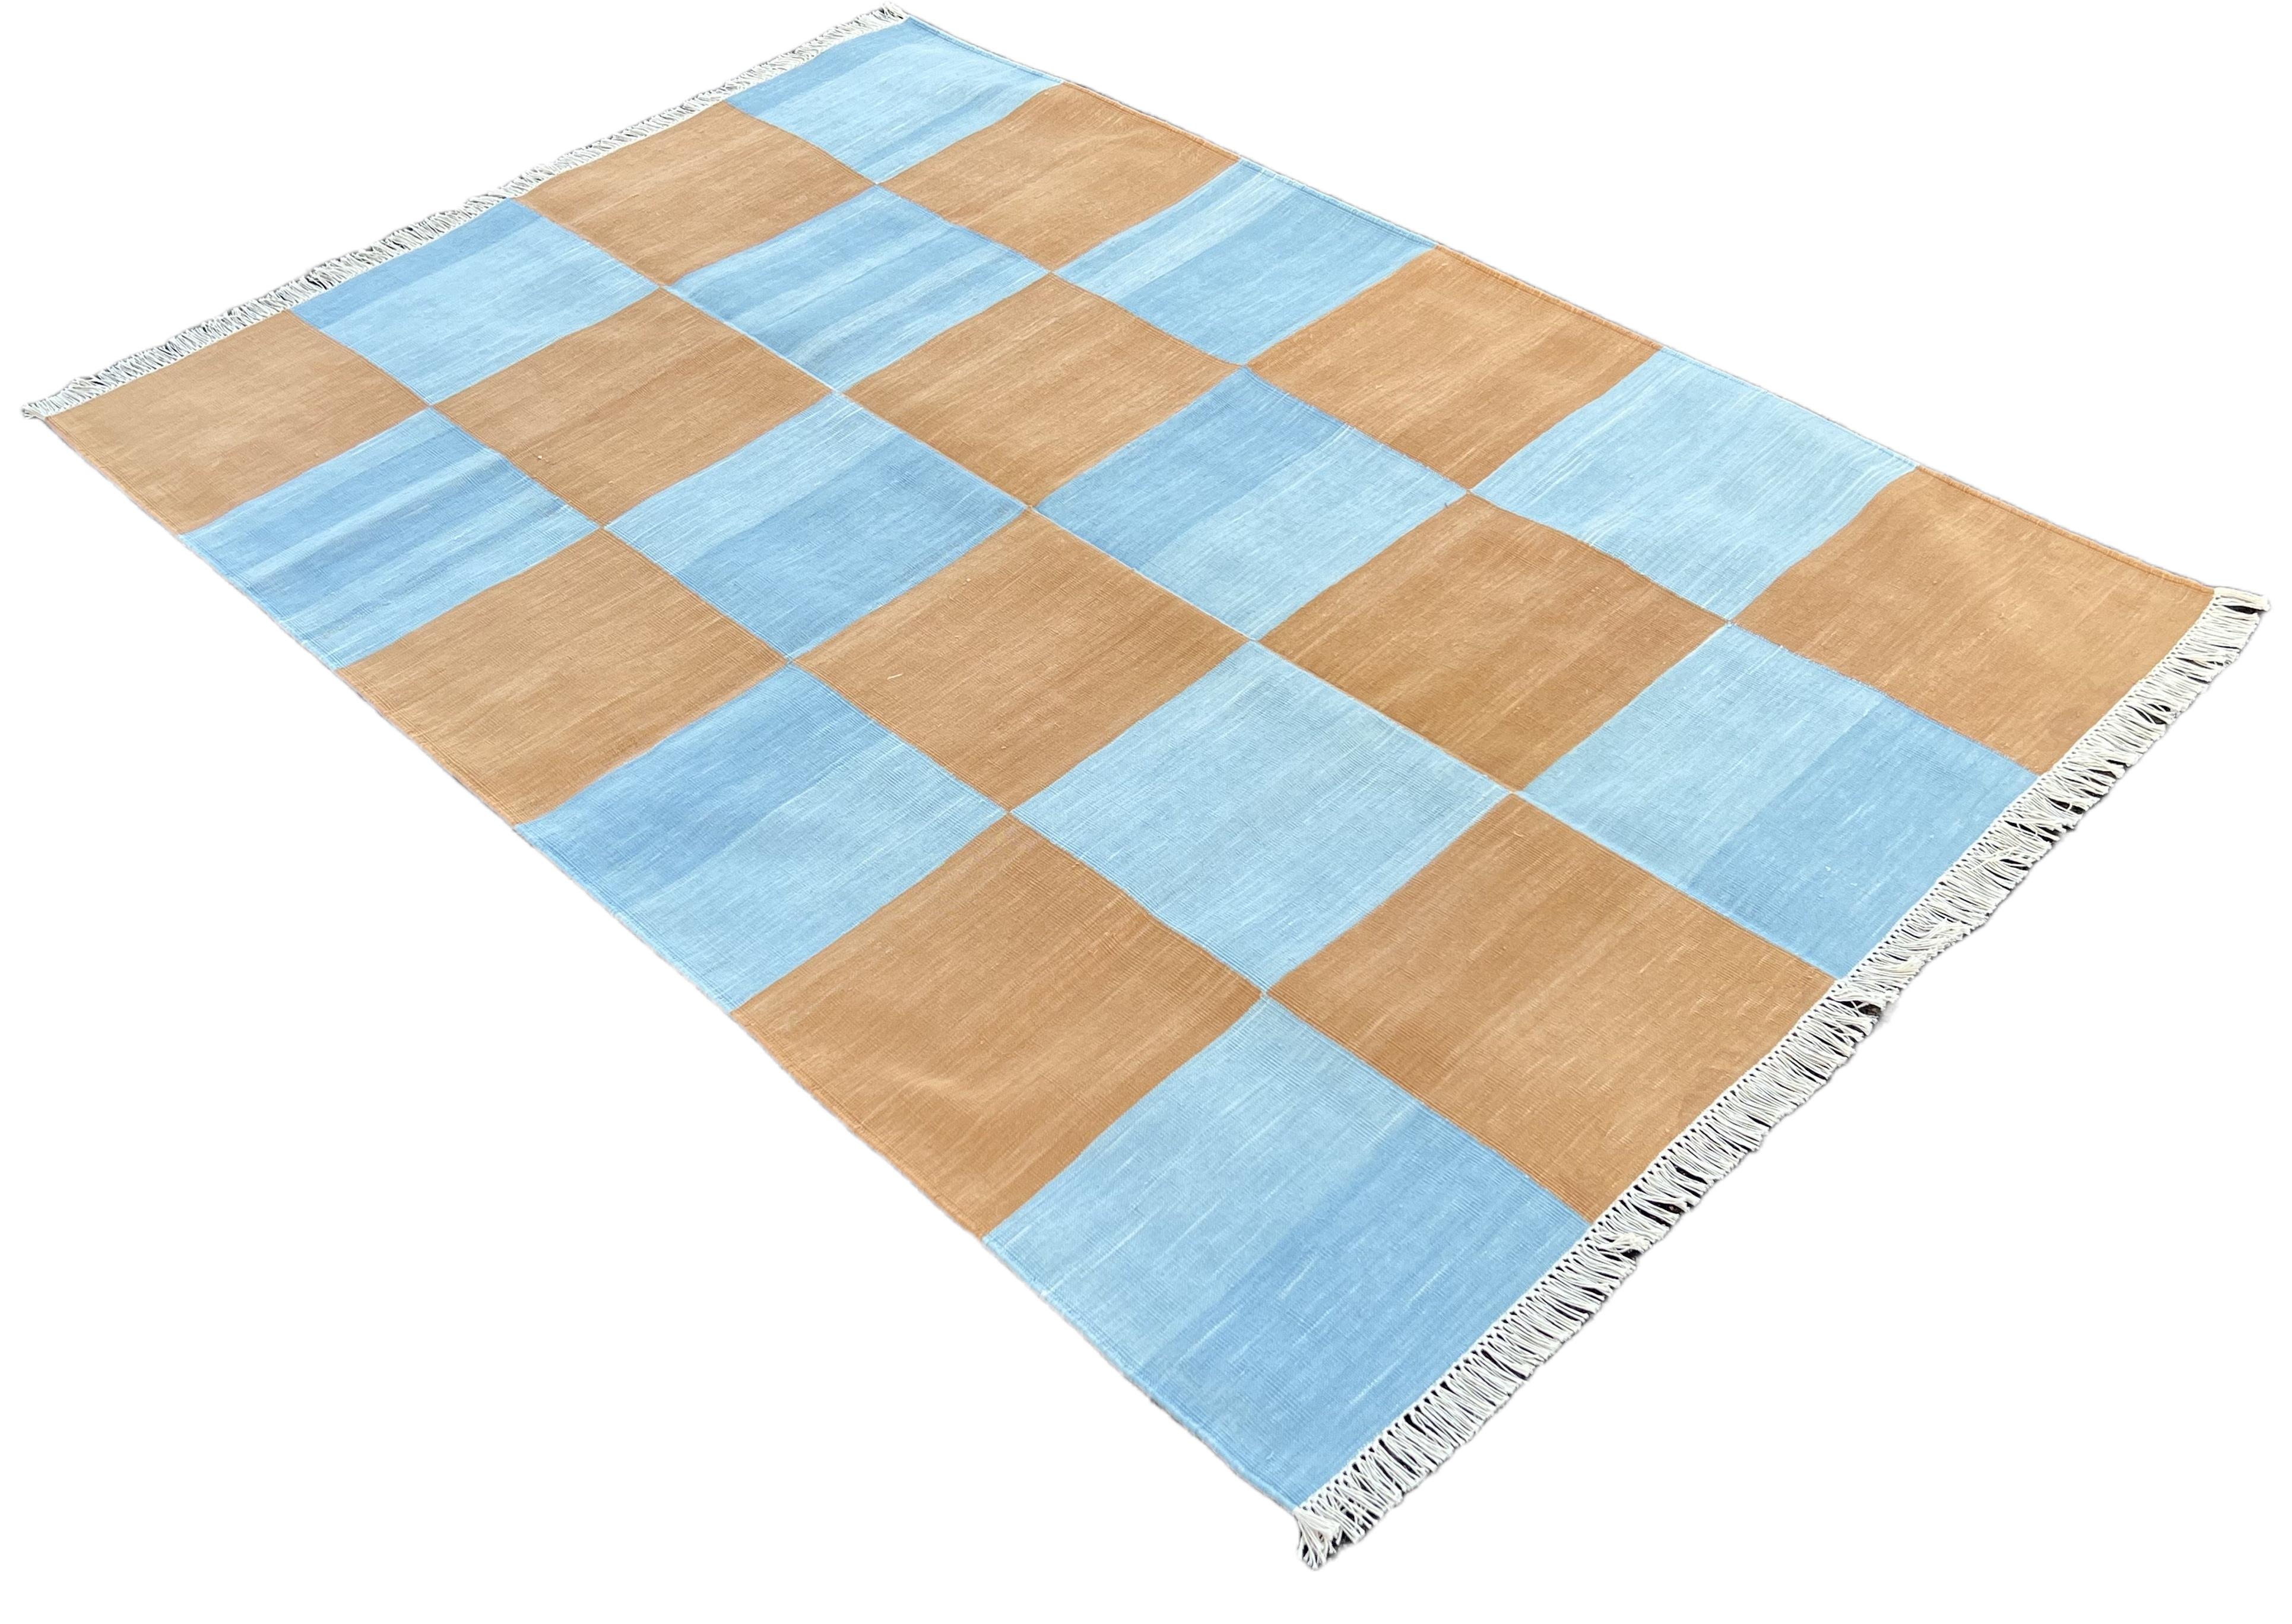 Baumwolle pflanzlich gefärbt Tan und blau kariert indischen Dhurrie Teppich-4'x6' 

Diese speziellen flachgewebten Dhurries werden aus 15-fachem Garn aus 100% Baumwolle handgewebt. Aufgrund der speziellen Fertigungstechniken, die zur Herstellung